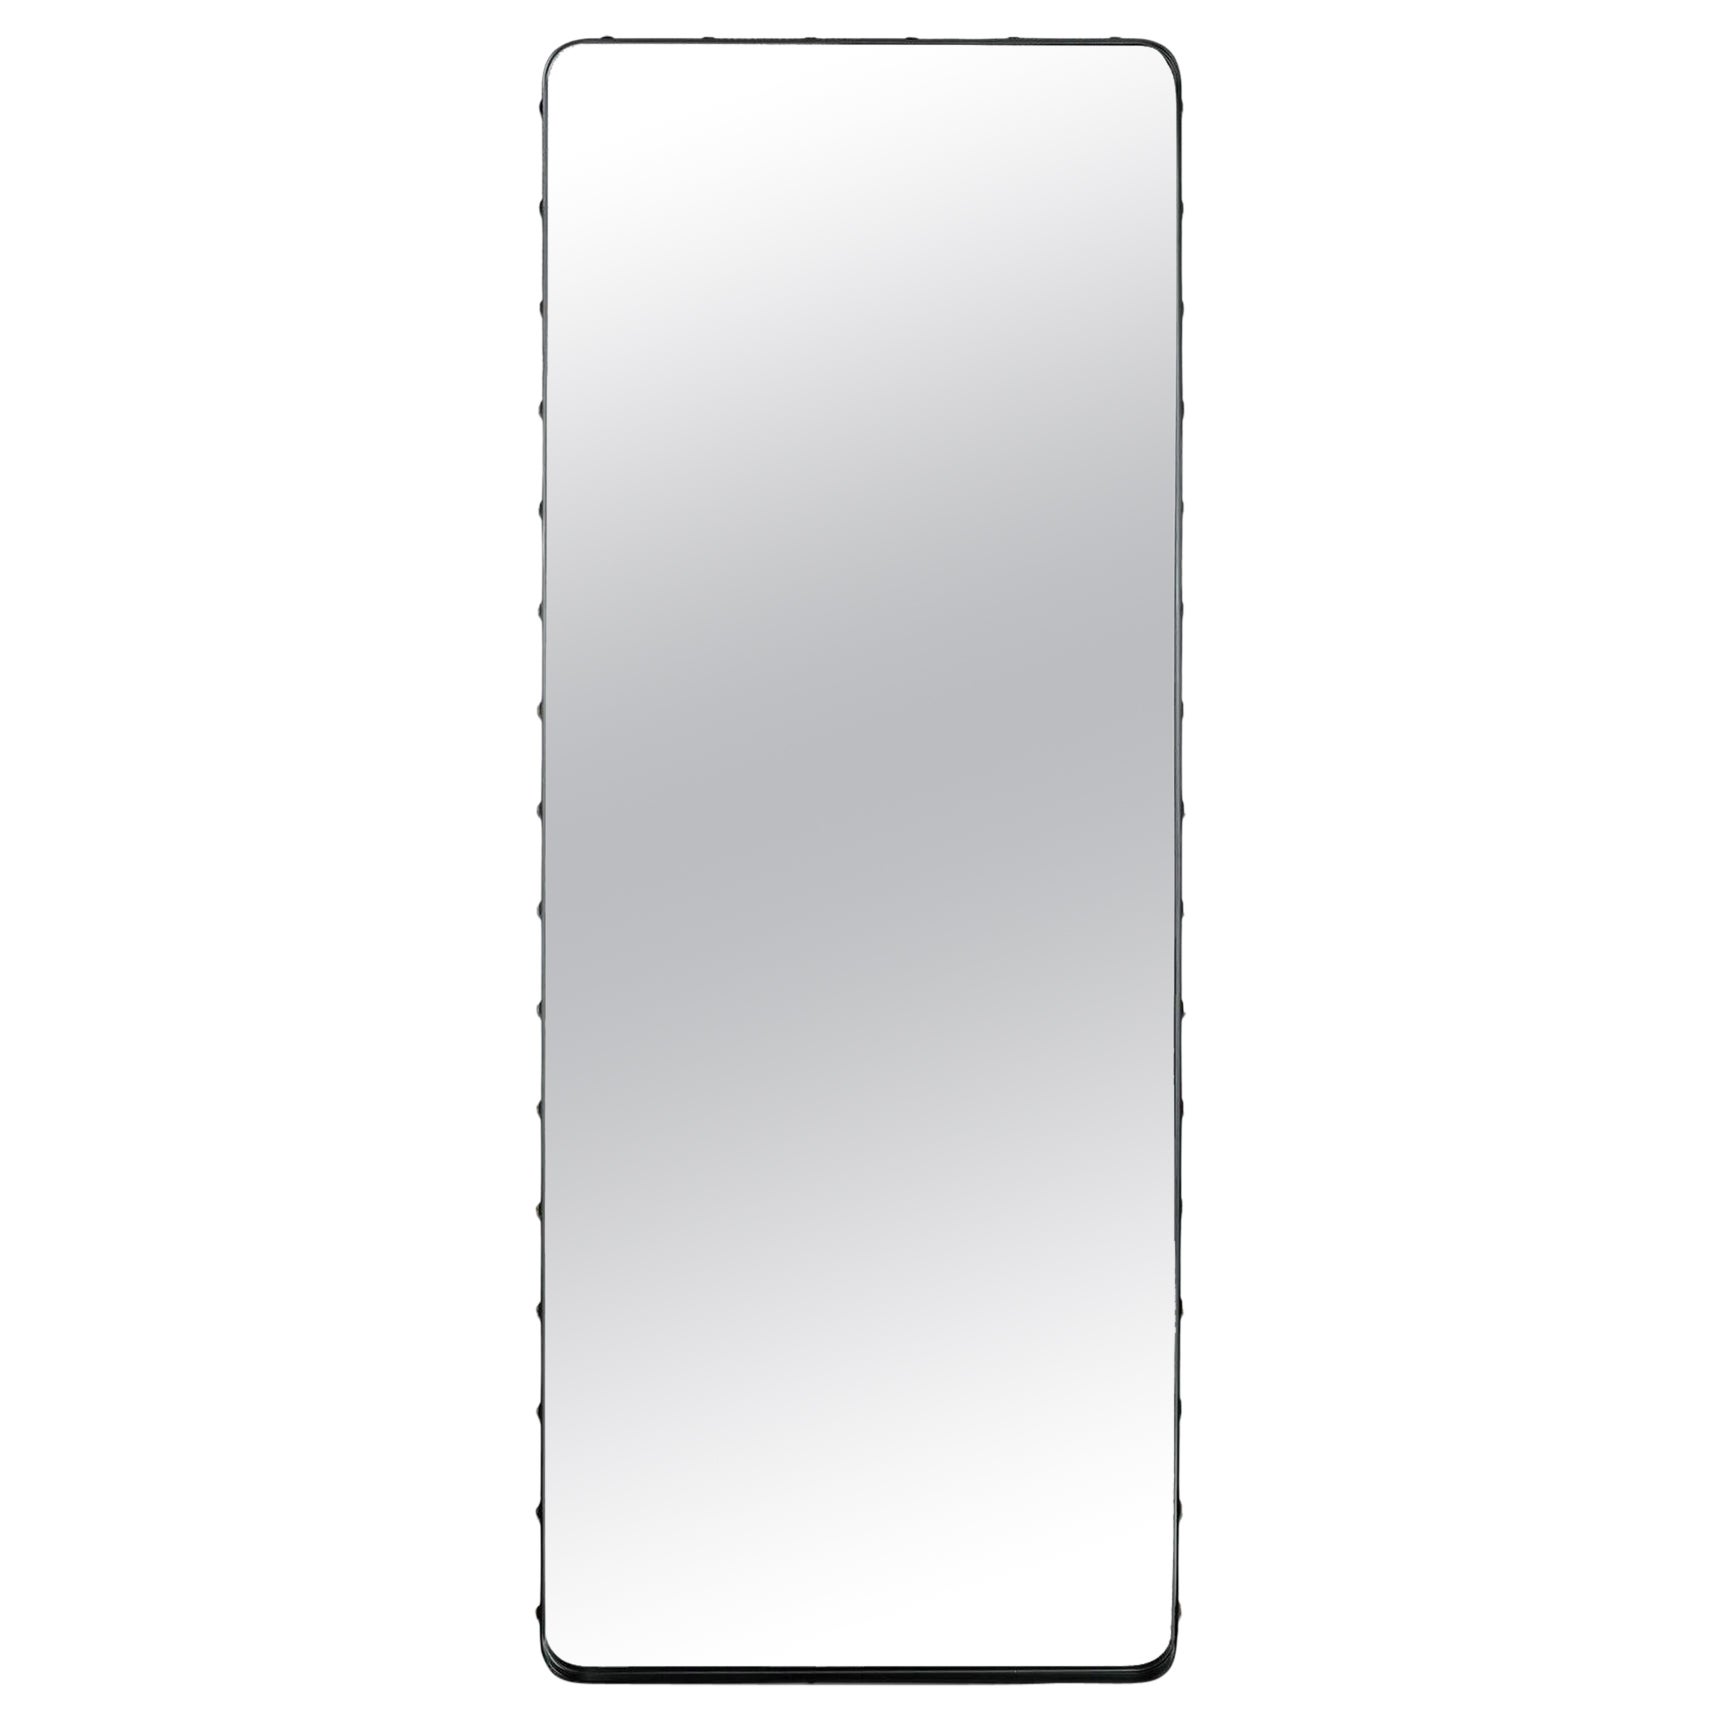 Grand miroir rectangulaire Adnet de Gubi en vente